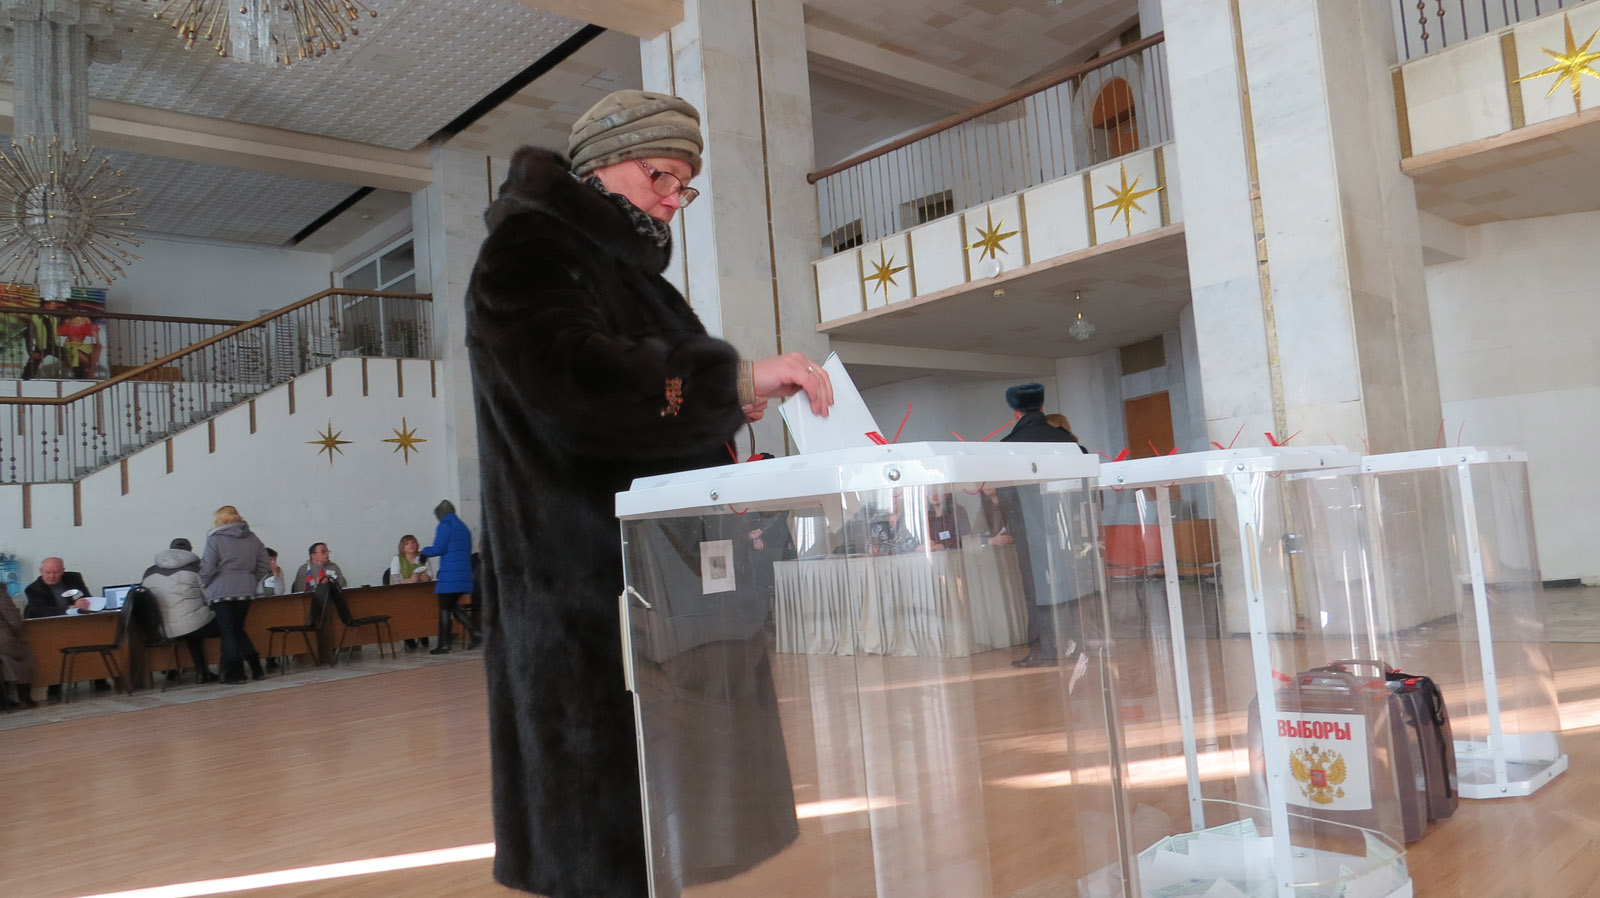 Явка по уик. Явка на выборах Владимирская область. Председатель уик. Фото Уика во время выборов.